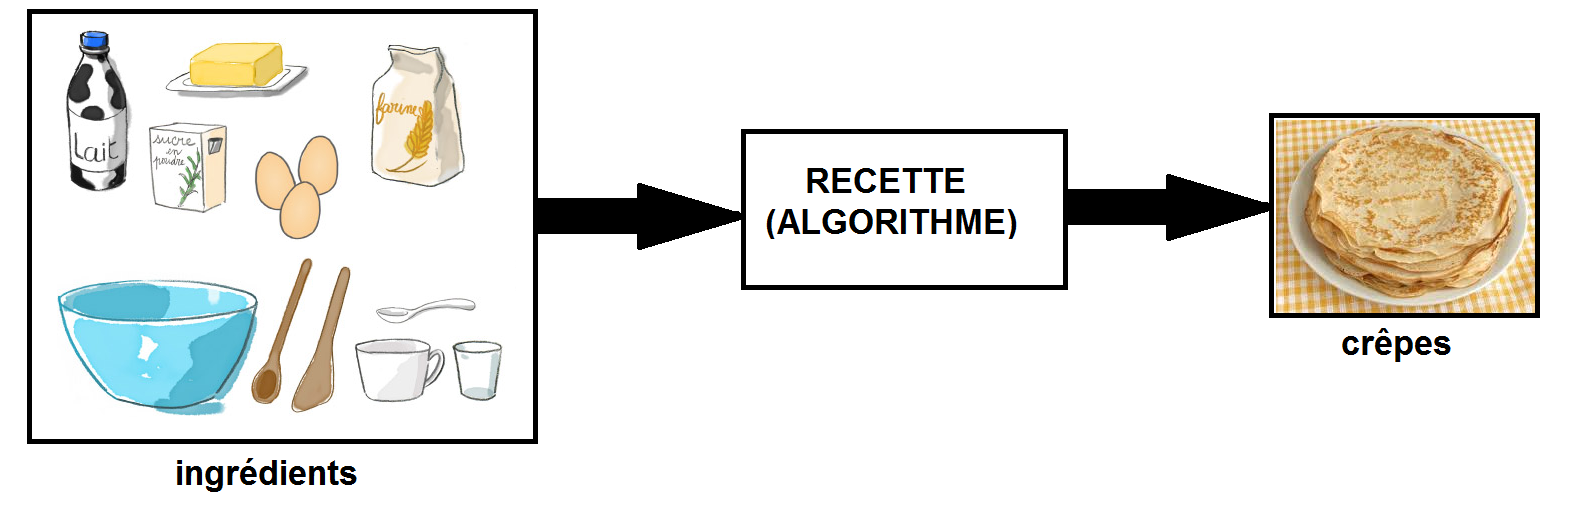 recette_crepes_algorithme.png